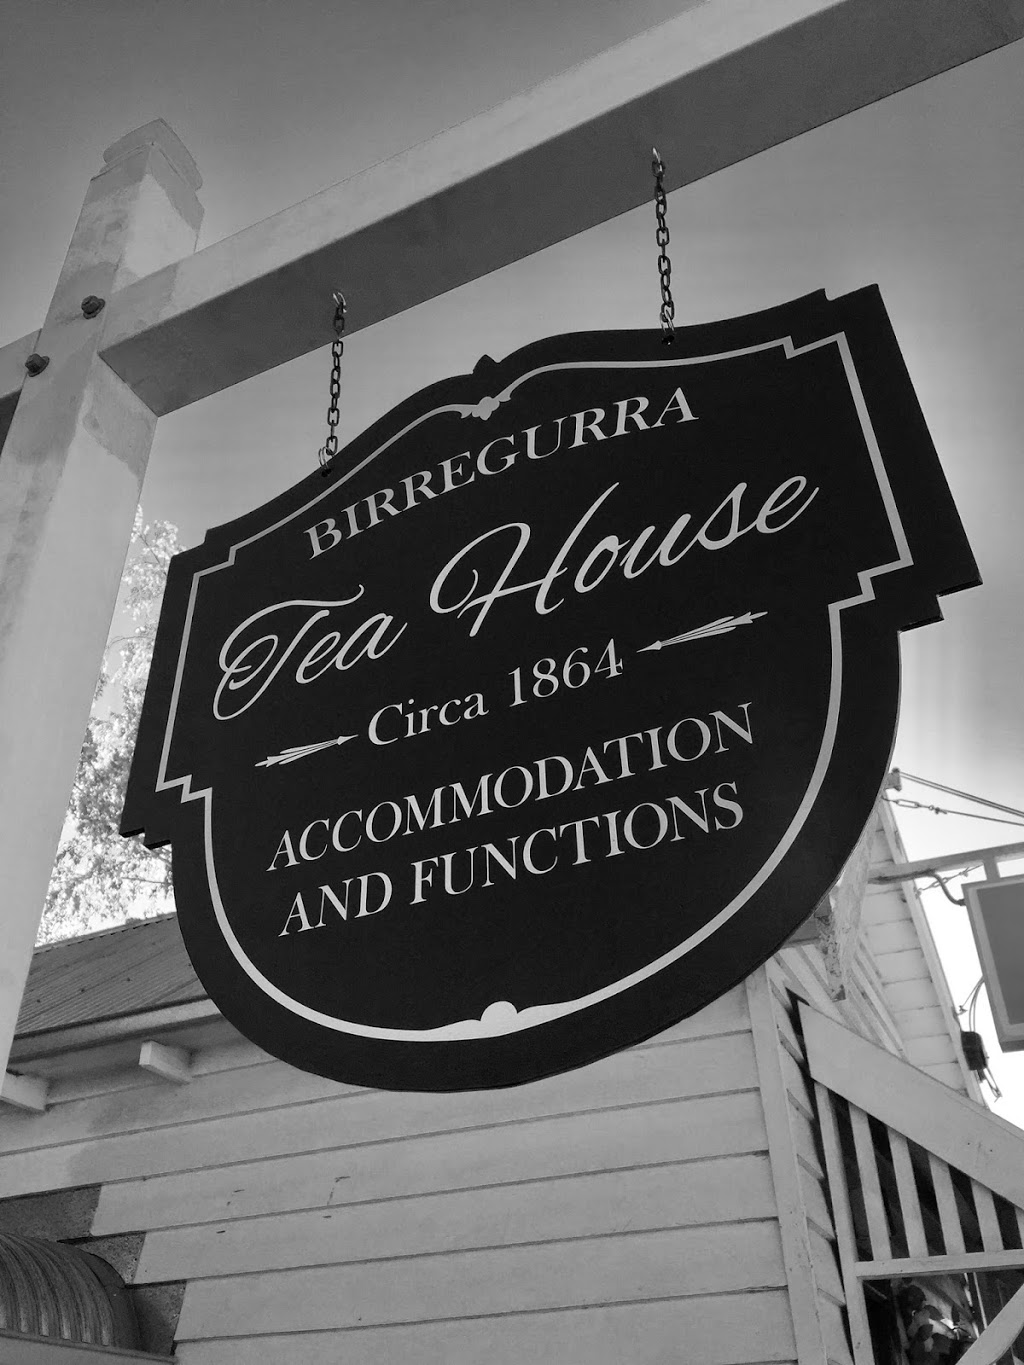 Birregurra Tea House | lodging | 73 Main St, Birregurra VIC 3242, Australia | 0428688263 OR +61 428 688 263